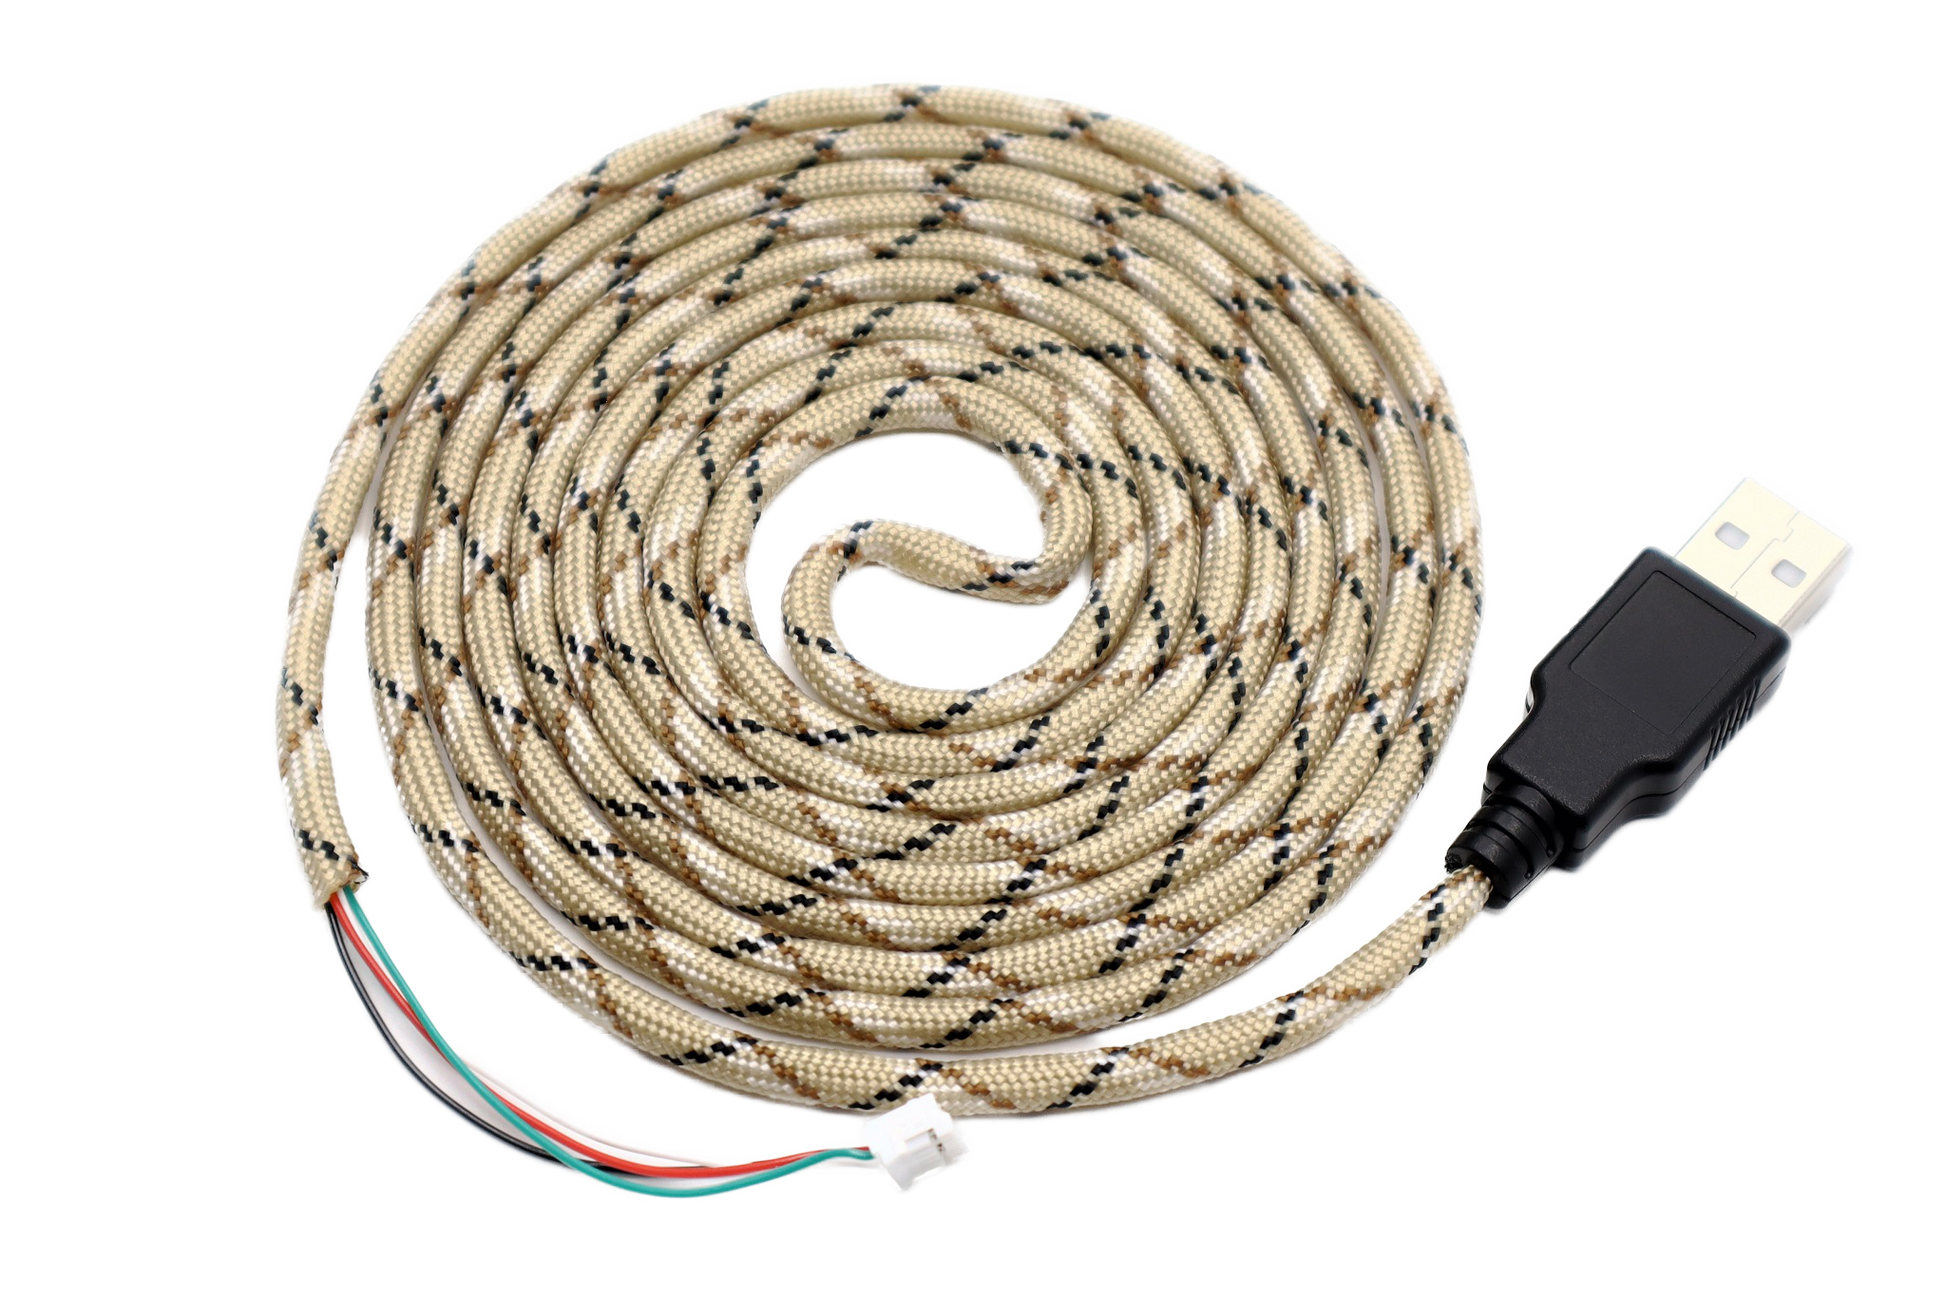 Desert Camo Paracord Mouse Cable Black USB